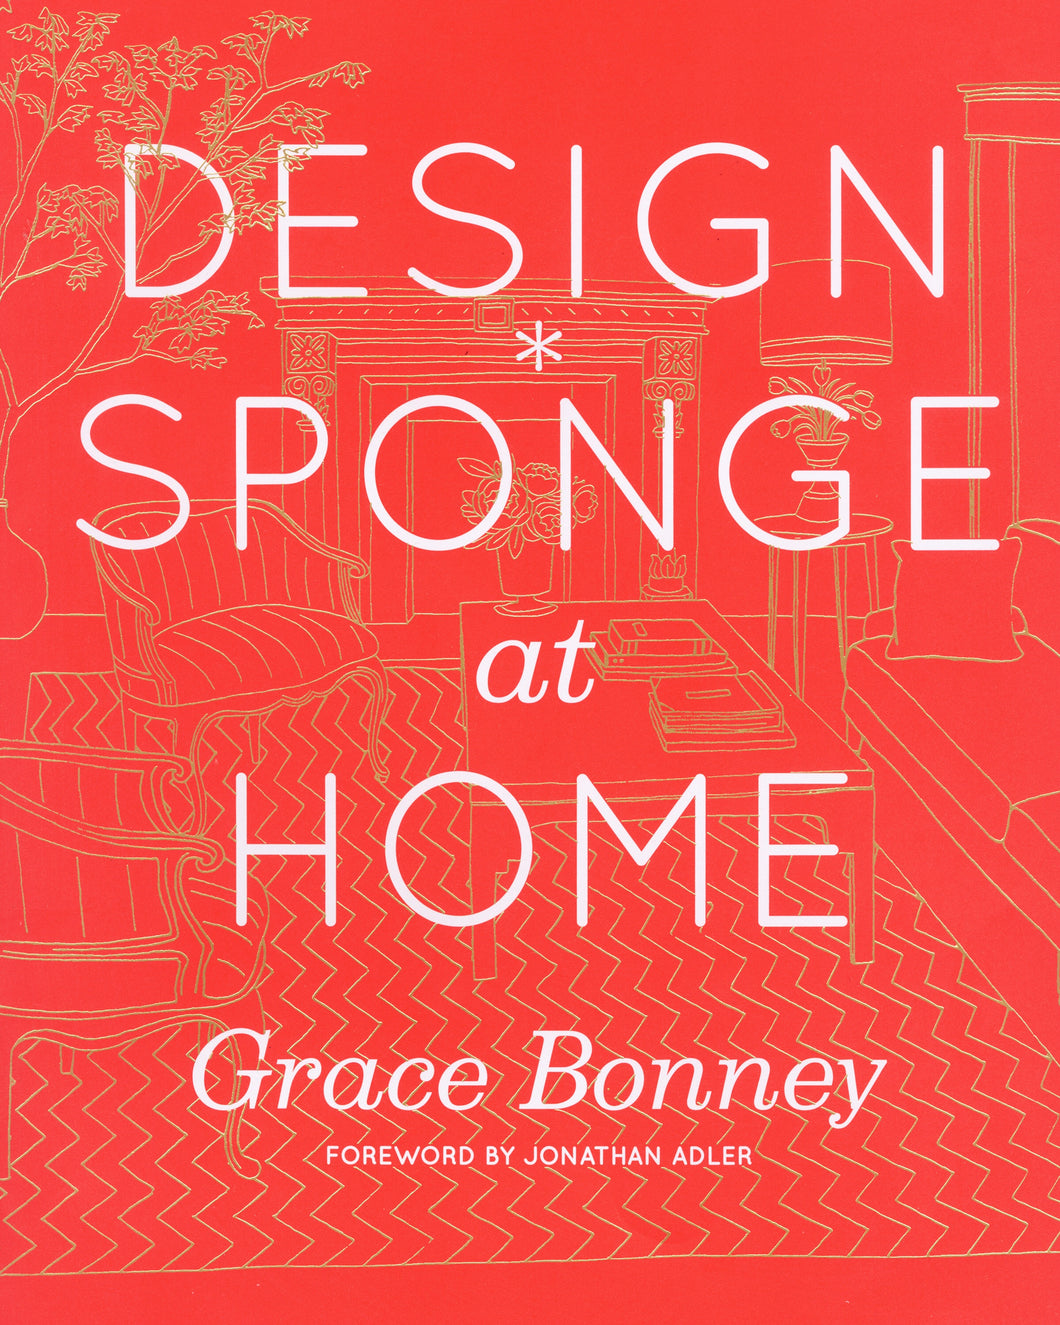 Design Sponge at Home